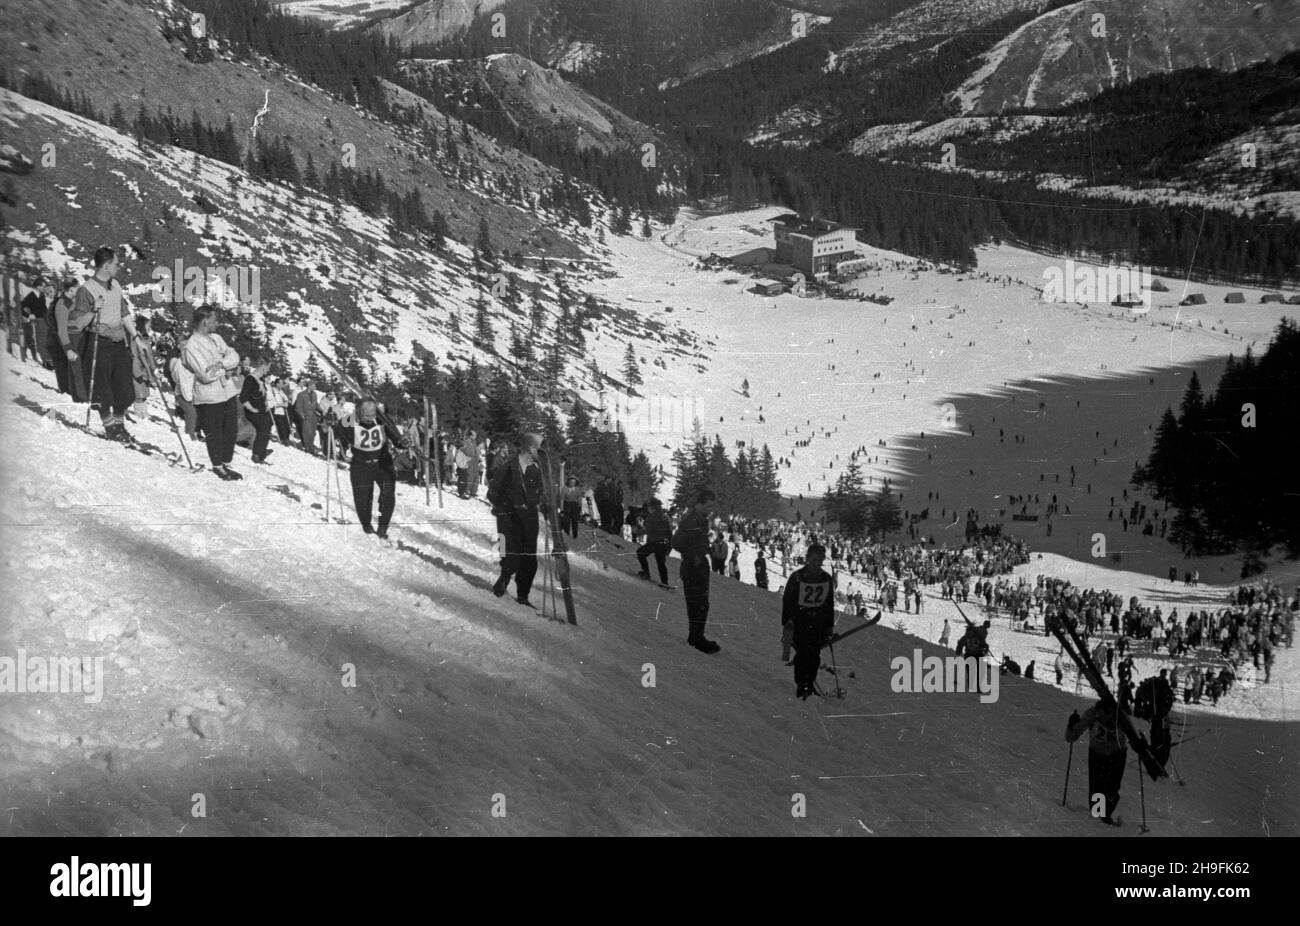 Karpacz, 1948-02-21. W dniach 19-23 lutego odbywa³y siê XXIII Mistrzostwa Narciarskie Polski. Slalom mê¿czyzn wygra³ Józef Marusarz (SNPTT Zakopane). Nz. widzowie na trasie slalomu mê¿czyzn. pw  PAP      Karpacz, Feb. 21, 1948. The 23rd Poland's Skiing Championship was held on February 19-23. Jozef Marusarz (SNPTT Zakopane) won men's slalom. Pictured: fans on the route of men's slalom.  pw  PAP Stock Photo